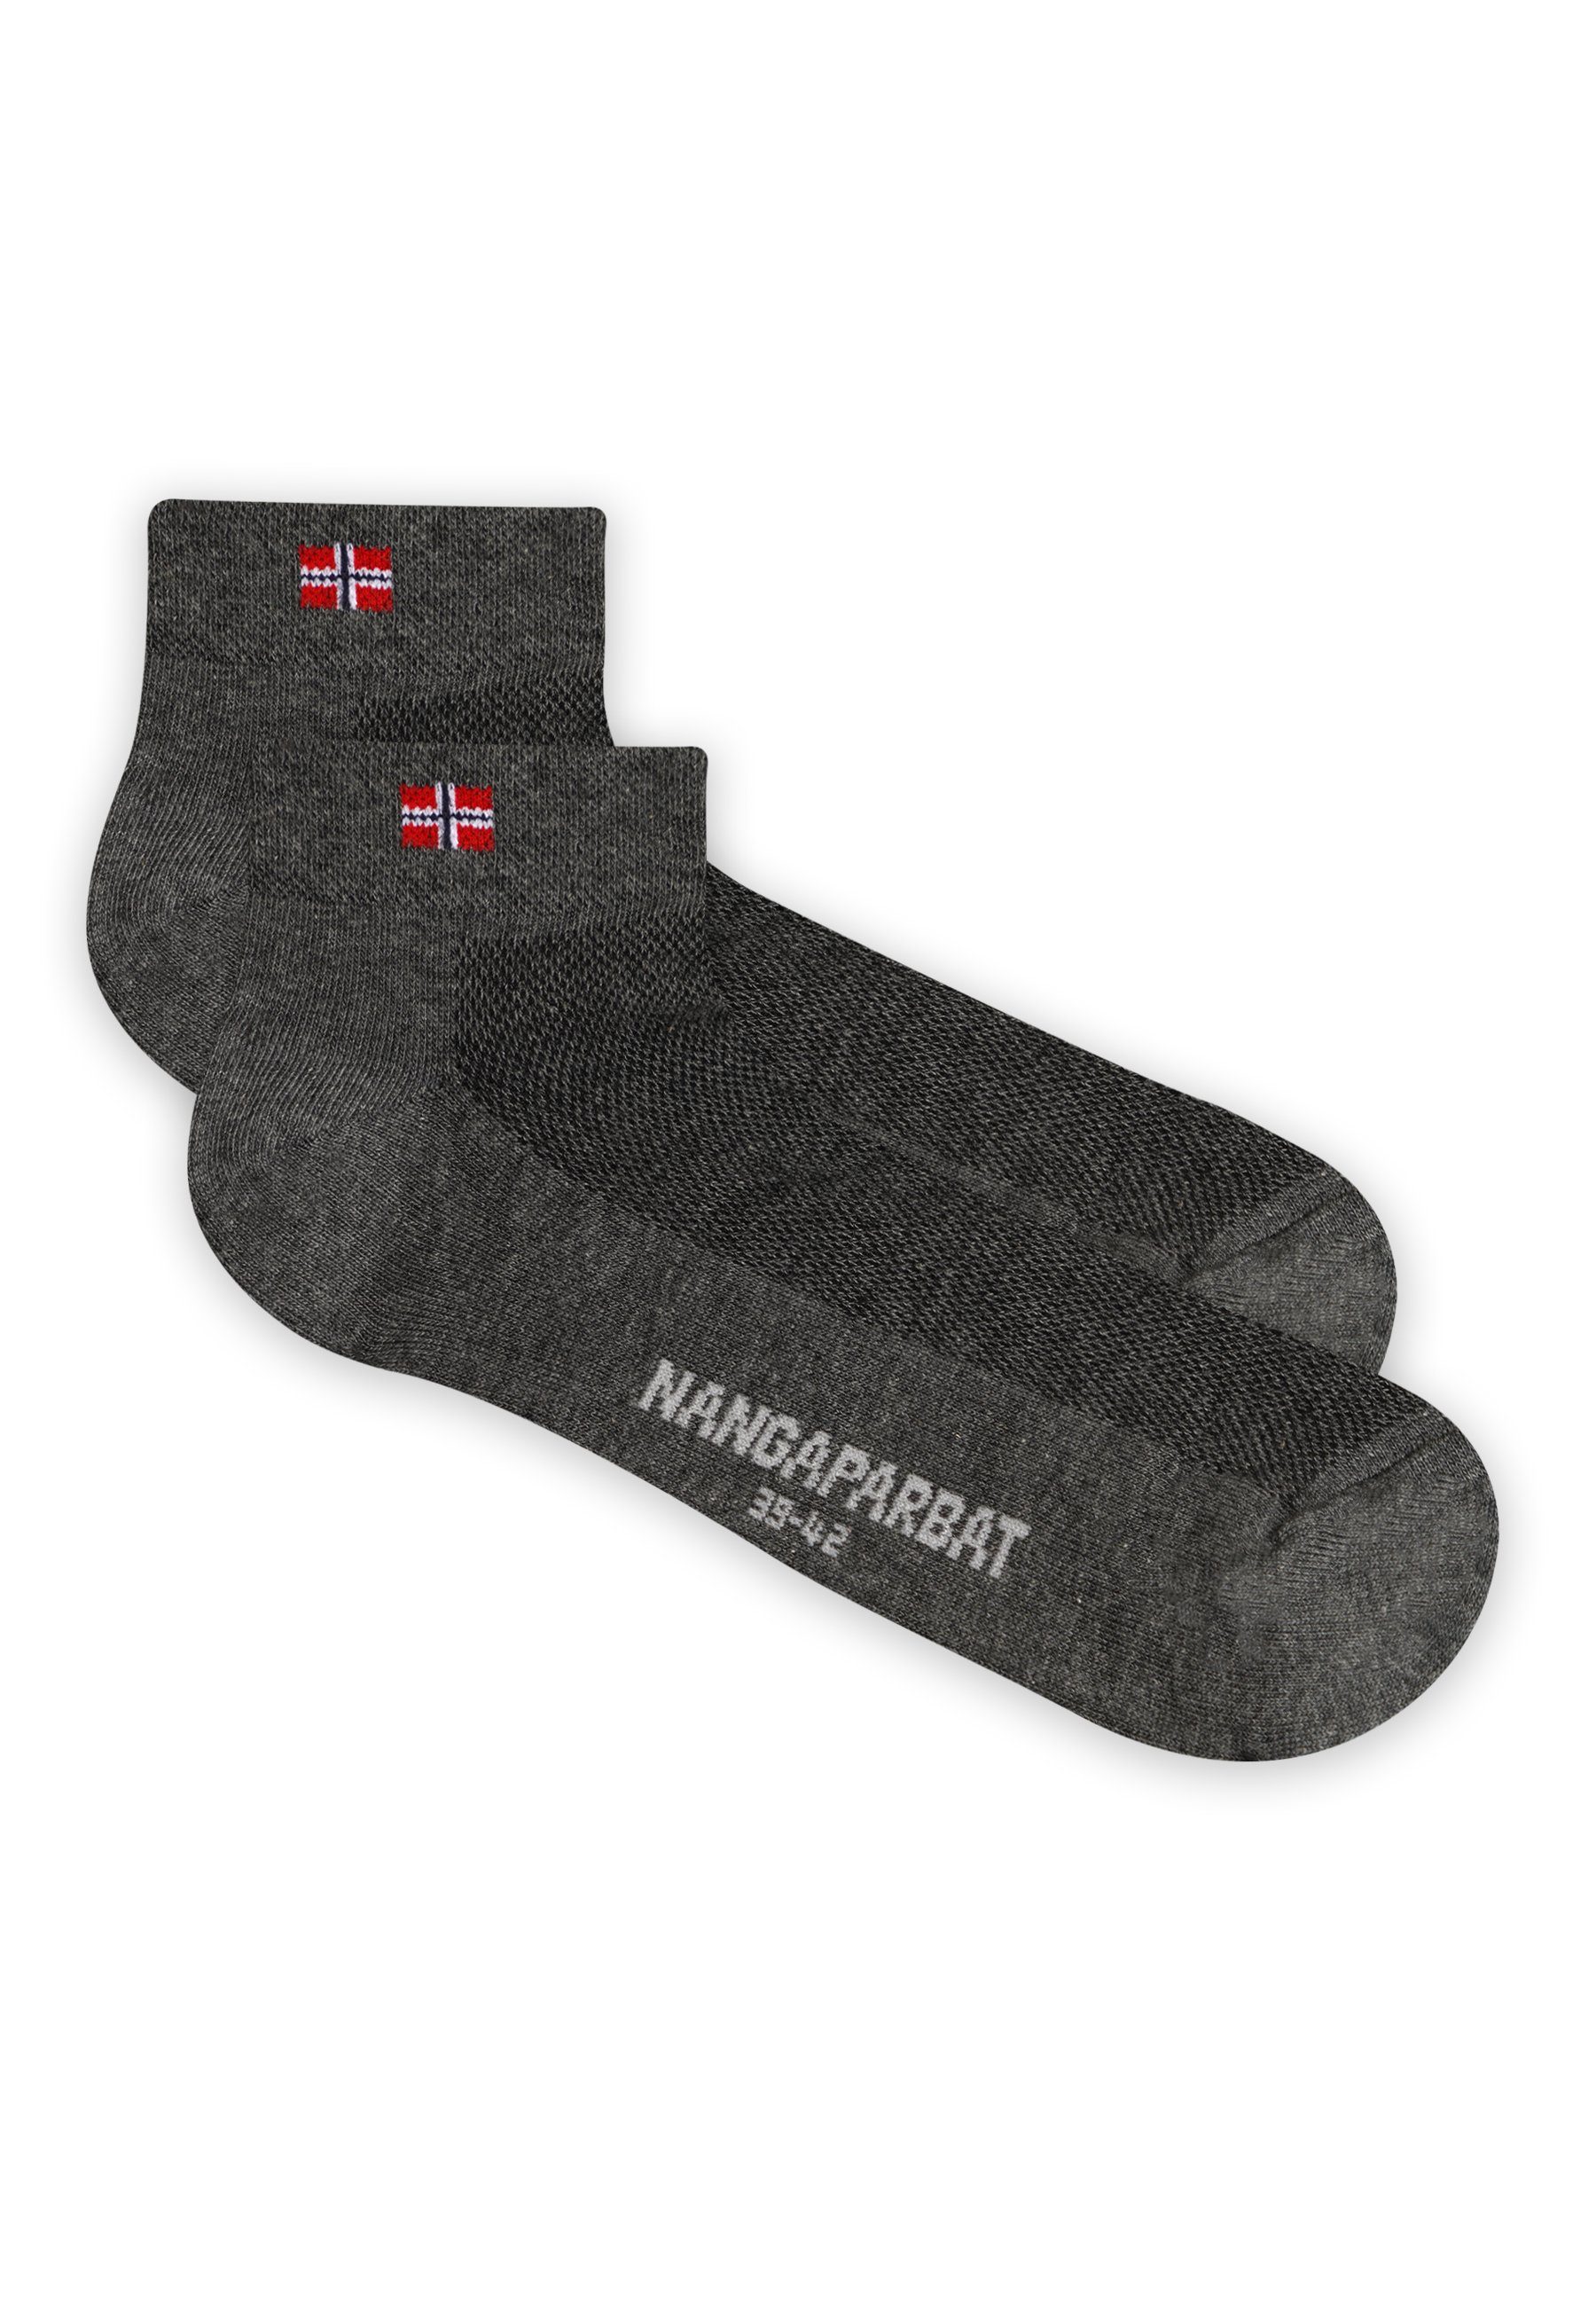 komfortabler mit Trittdämpfung Socken NANGAPARBAT dunkelgrau